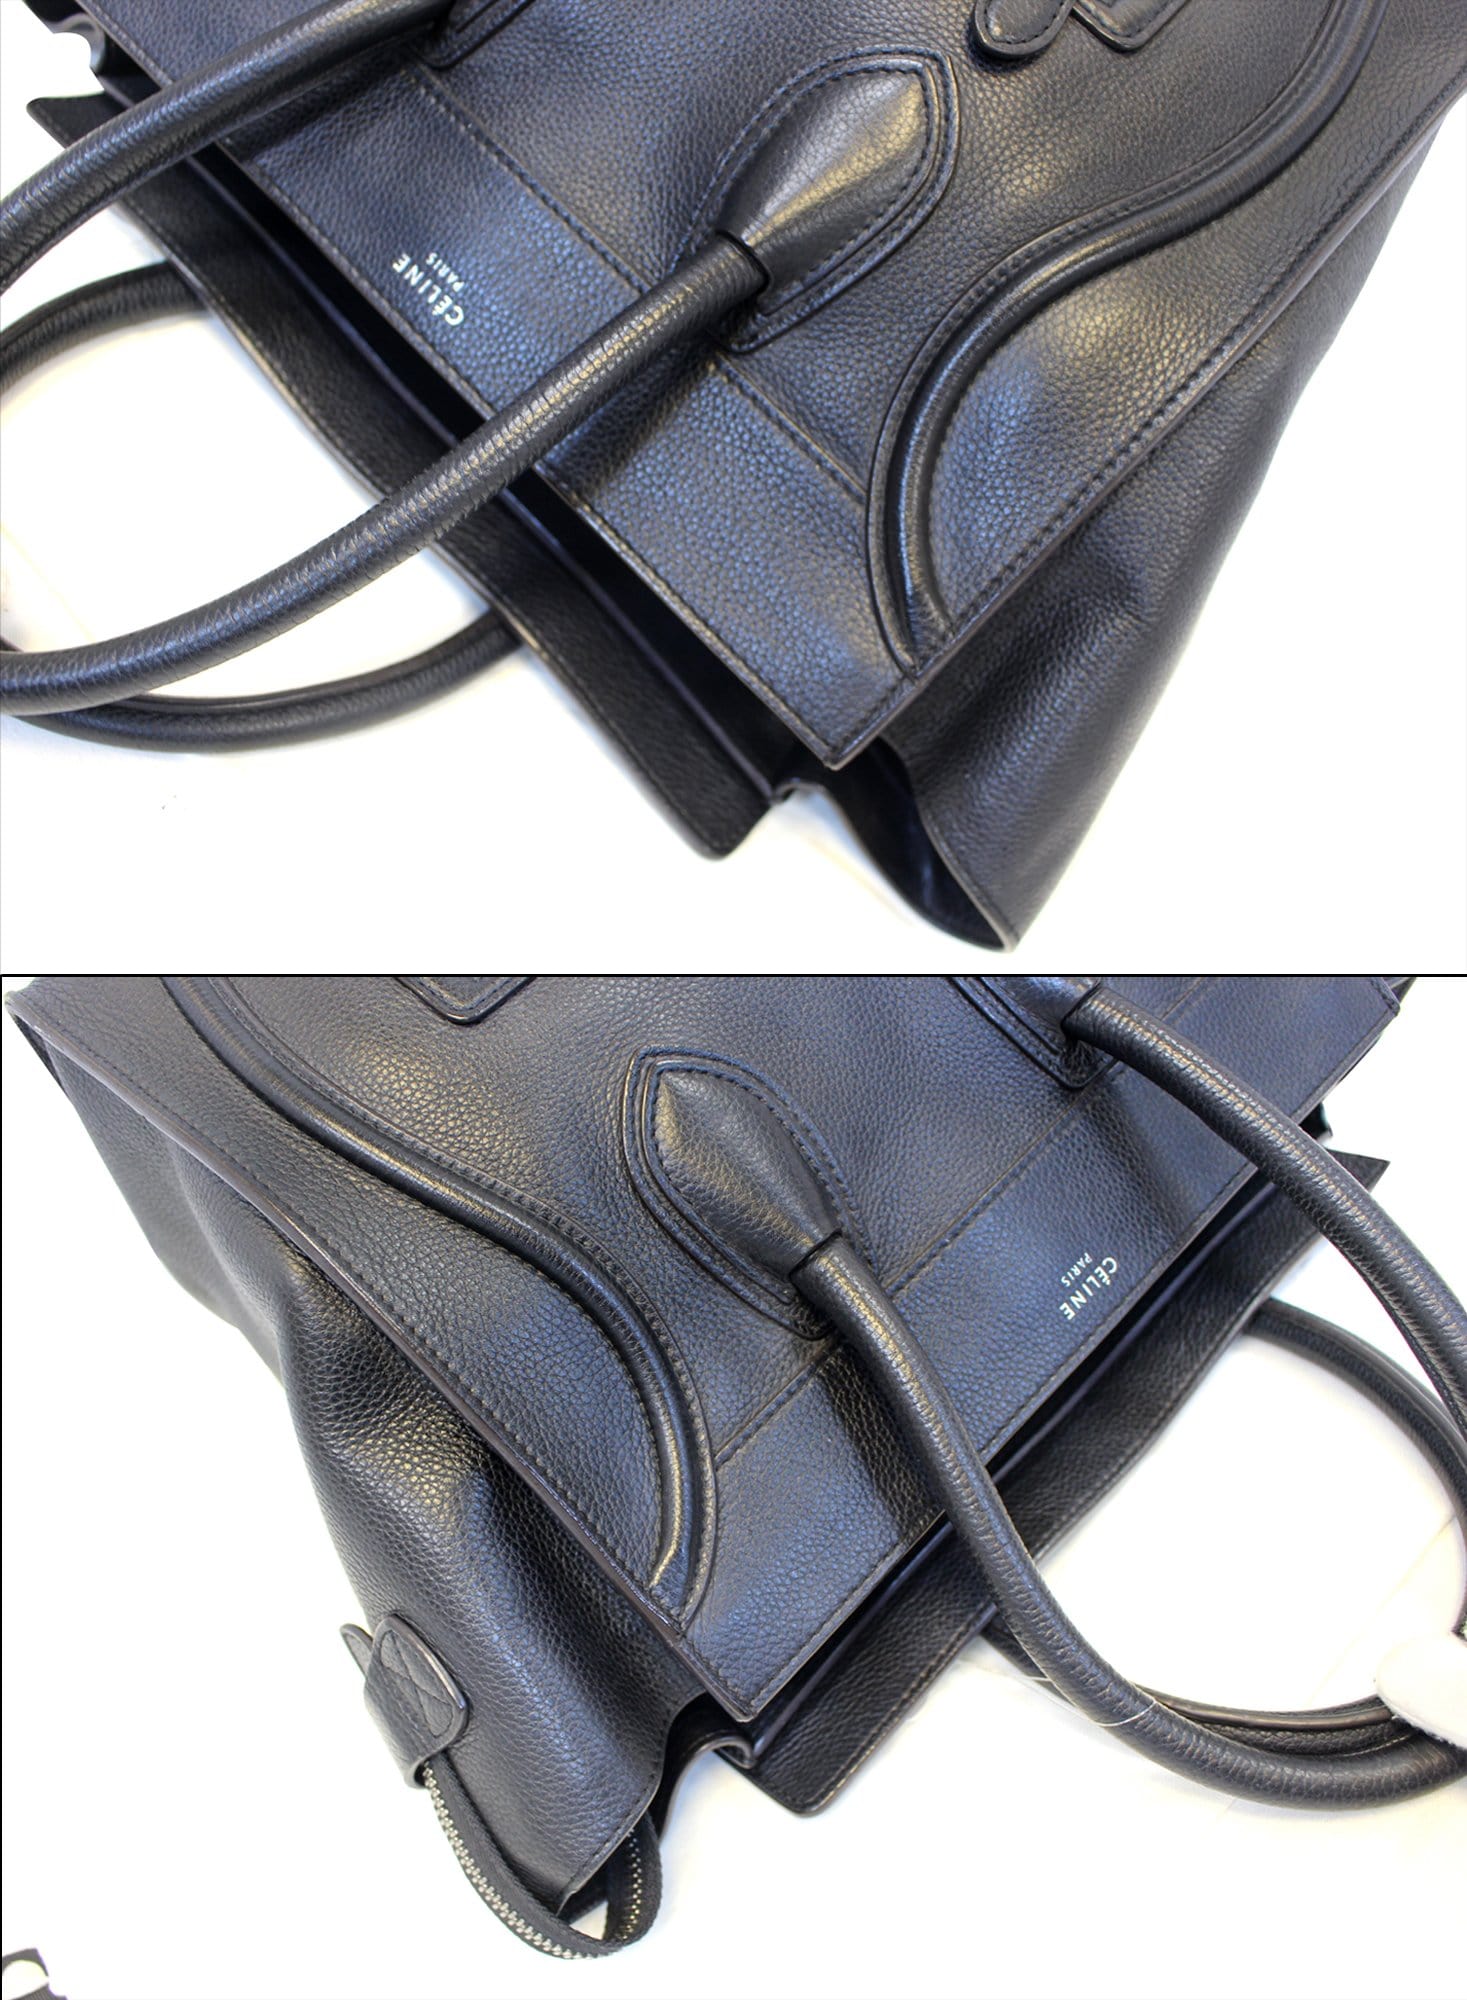 Celine Bag - Celine Black Leather Mini Luggage Tote